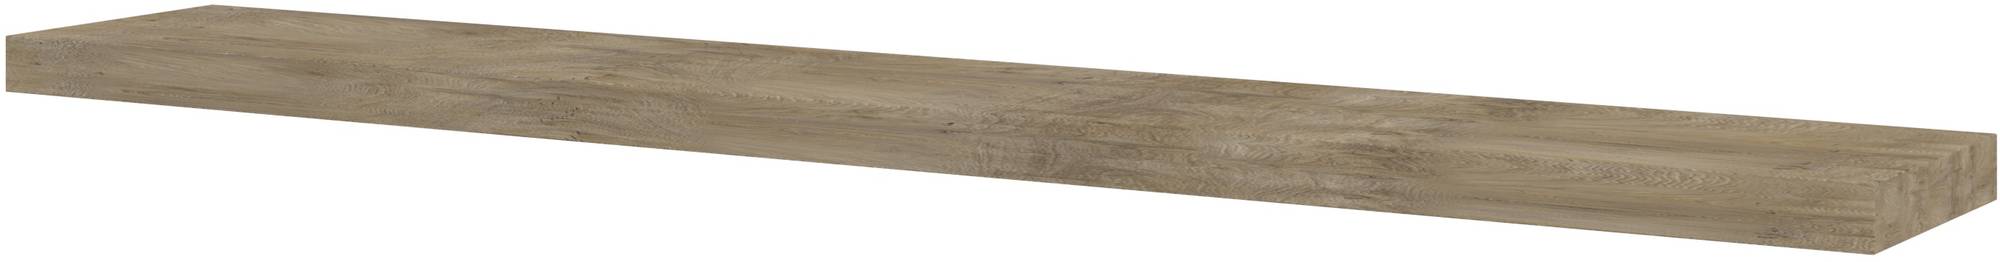 Saniselect Planchet 120x20x3,5 cm Raw Oak